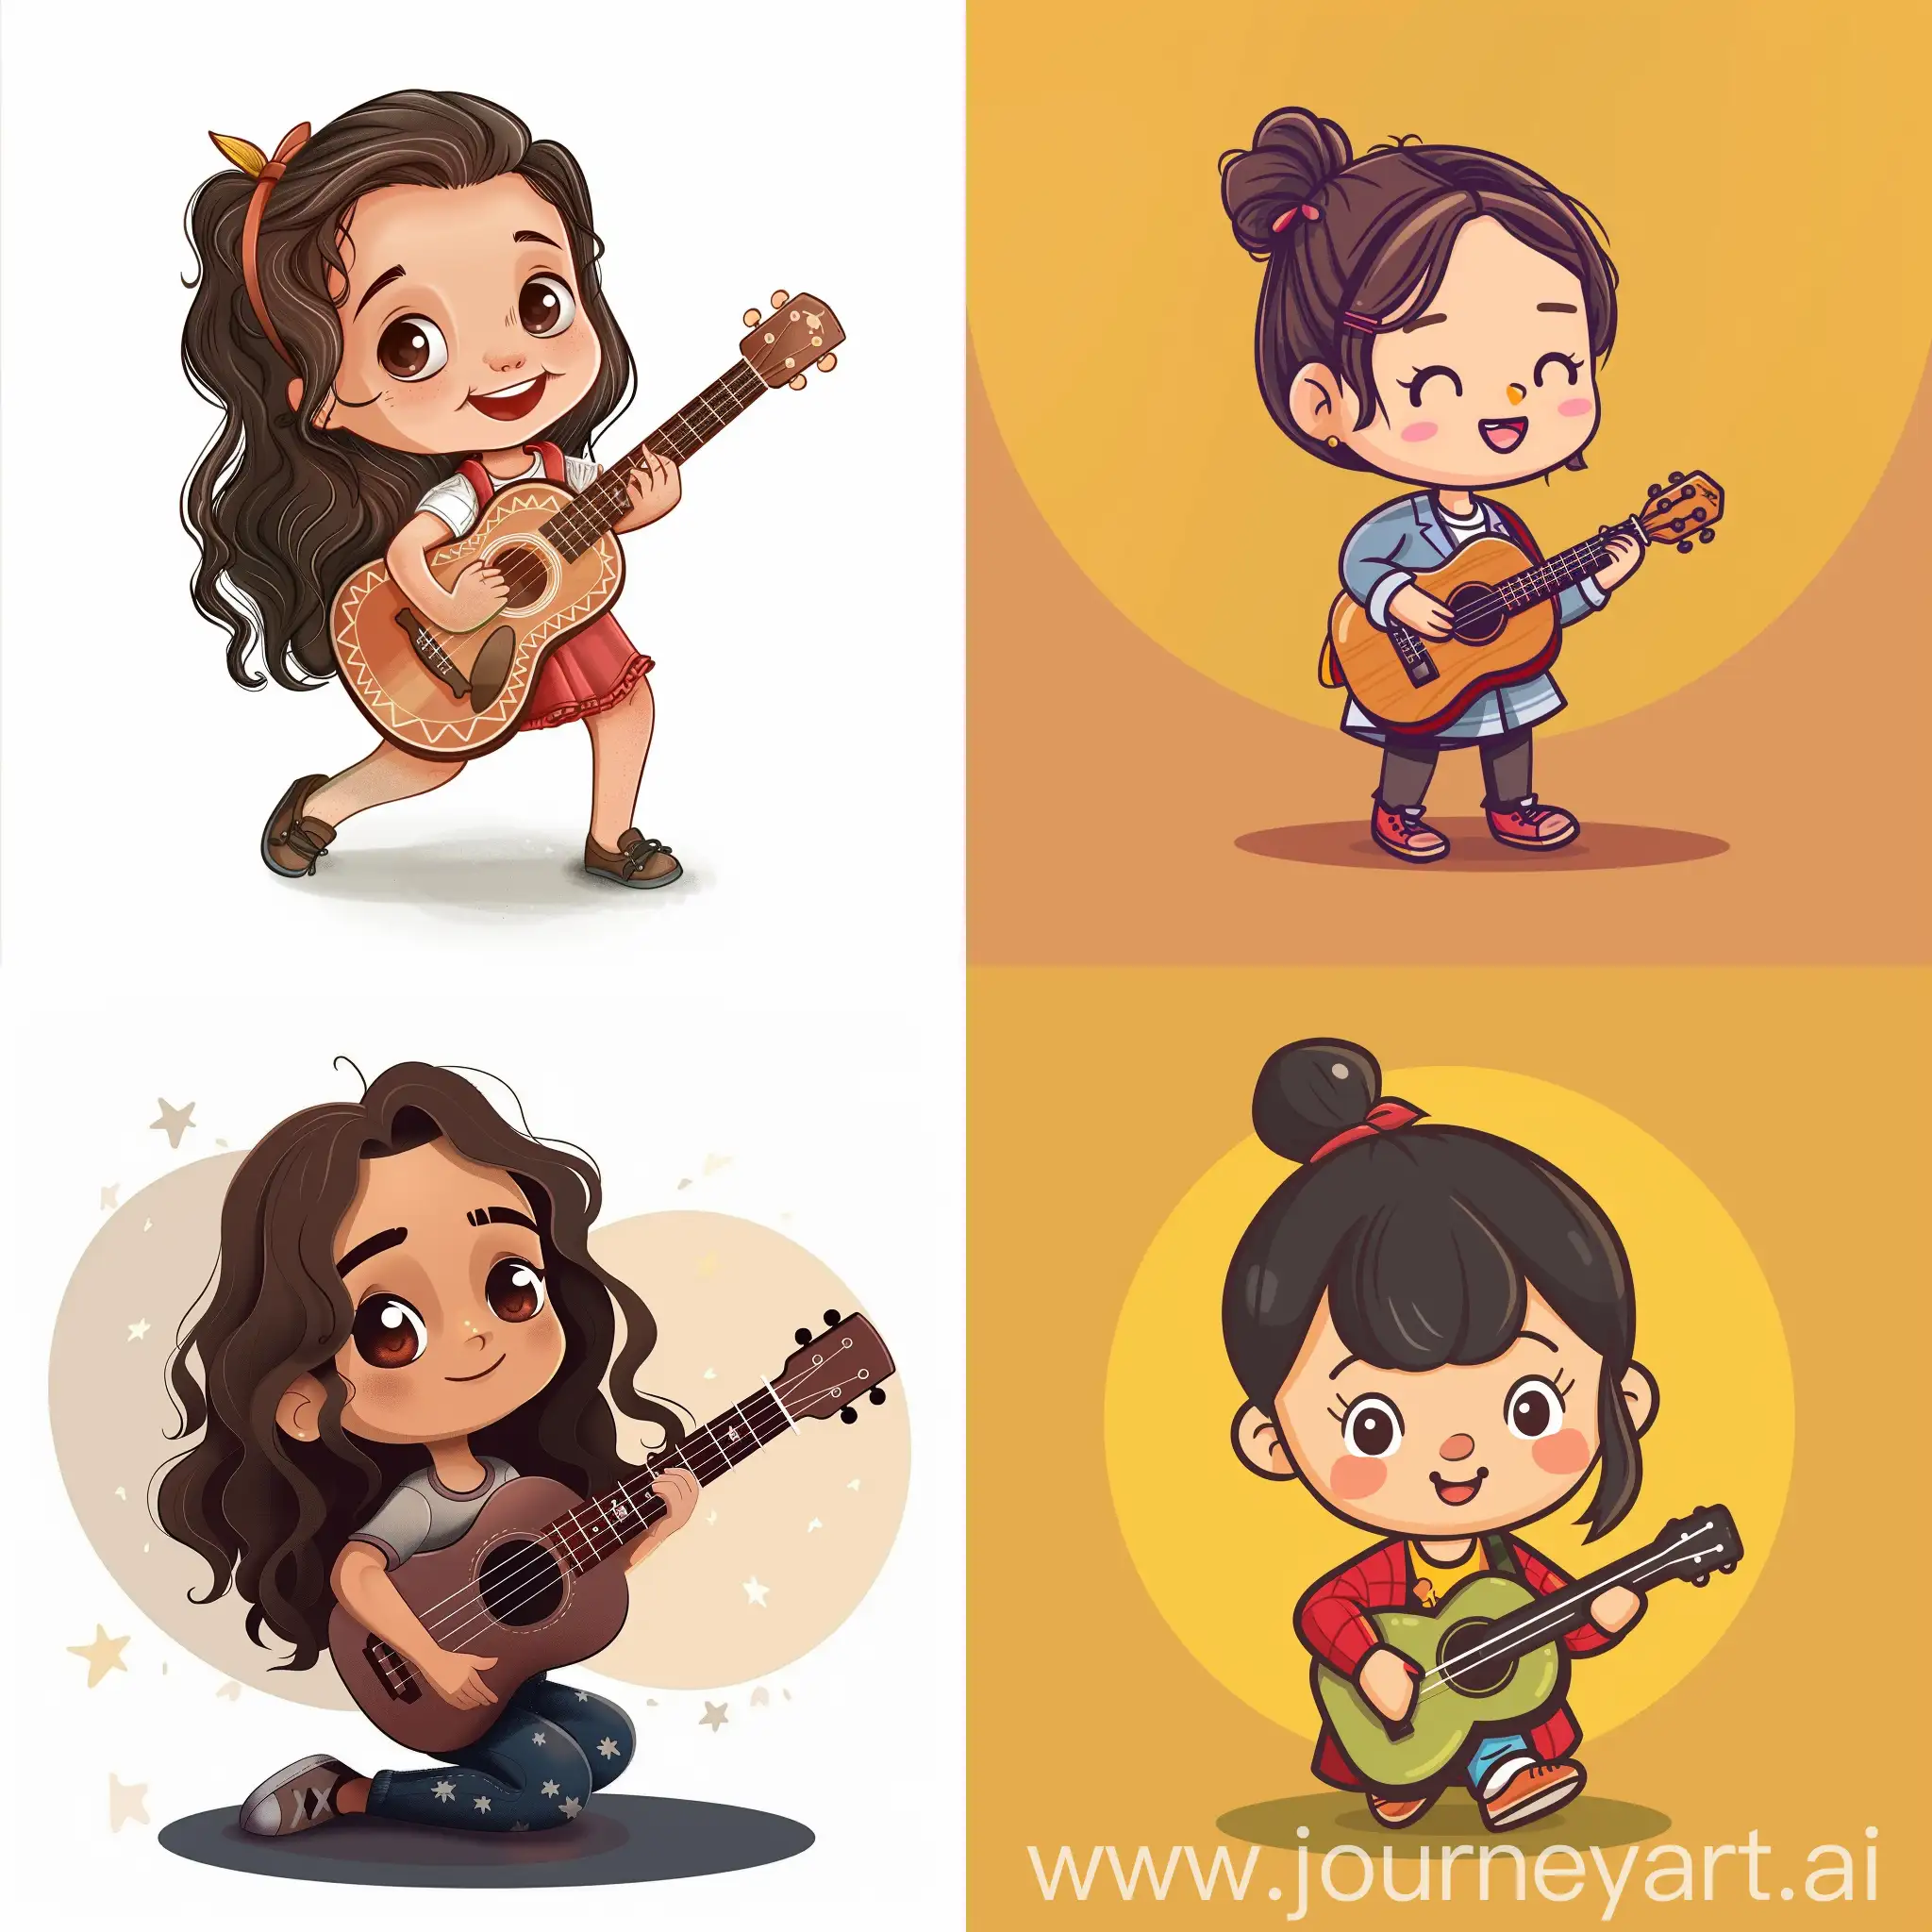 Cartoony digital art of a cute girl playing guitar